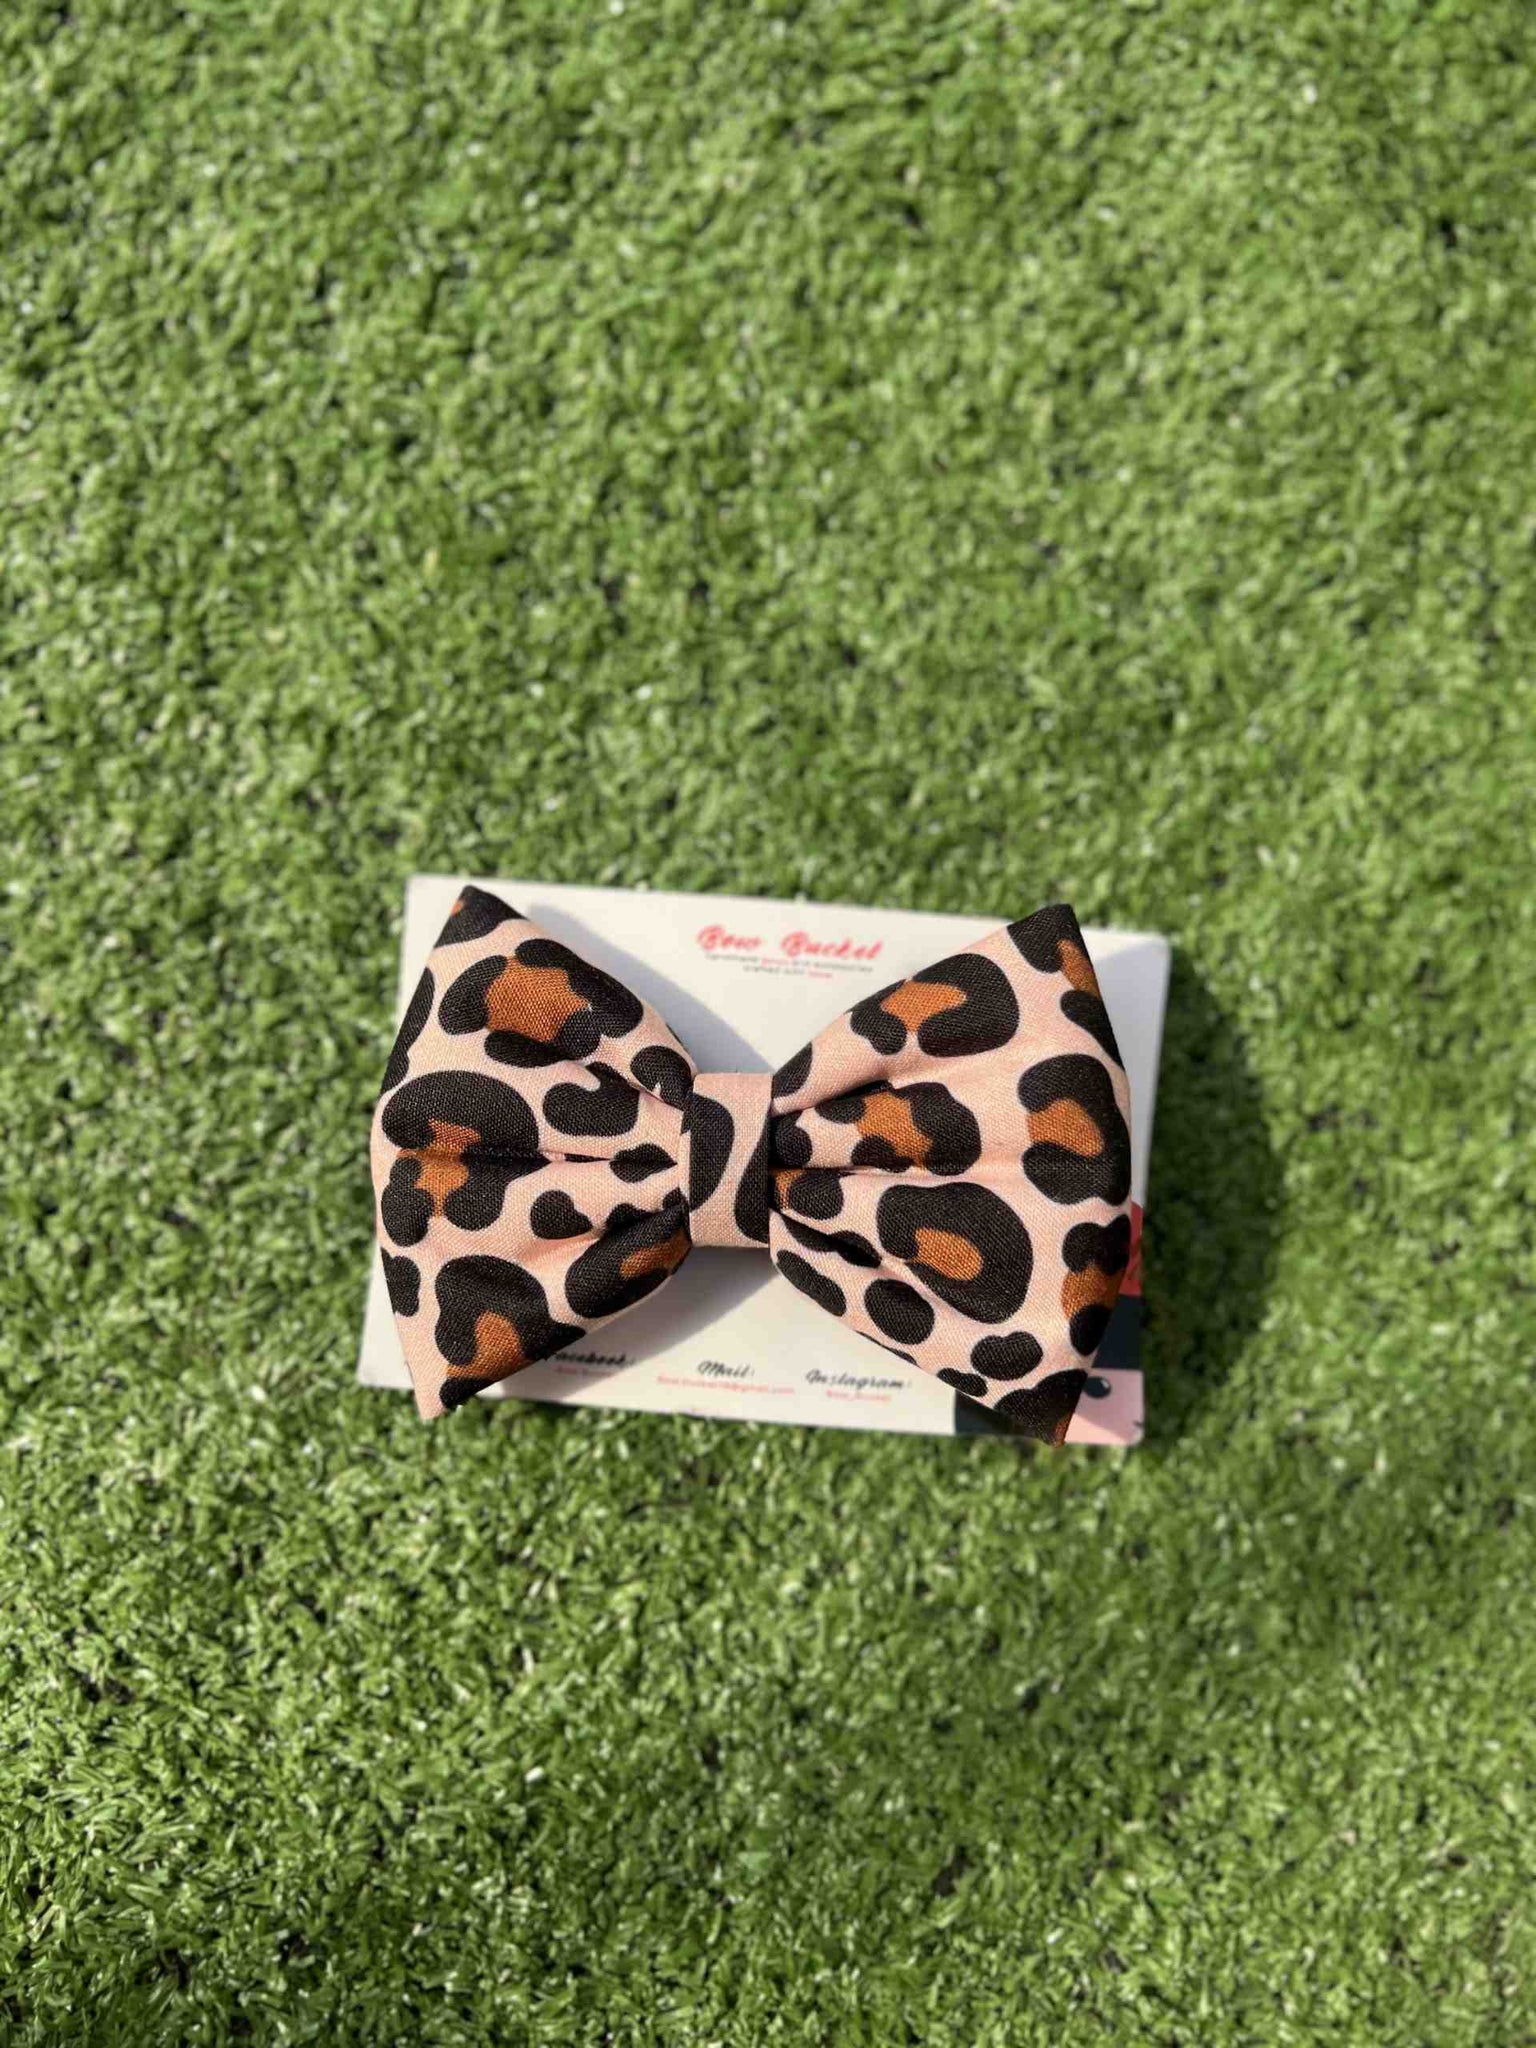 Cheetah print bow